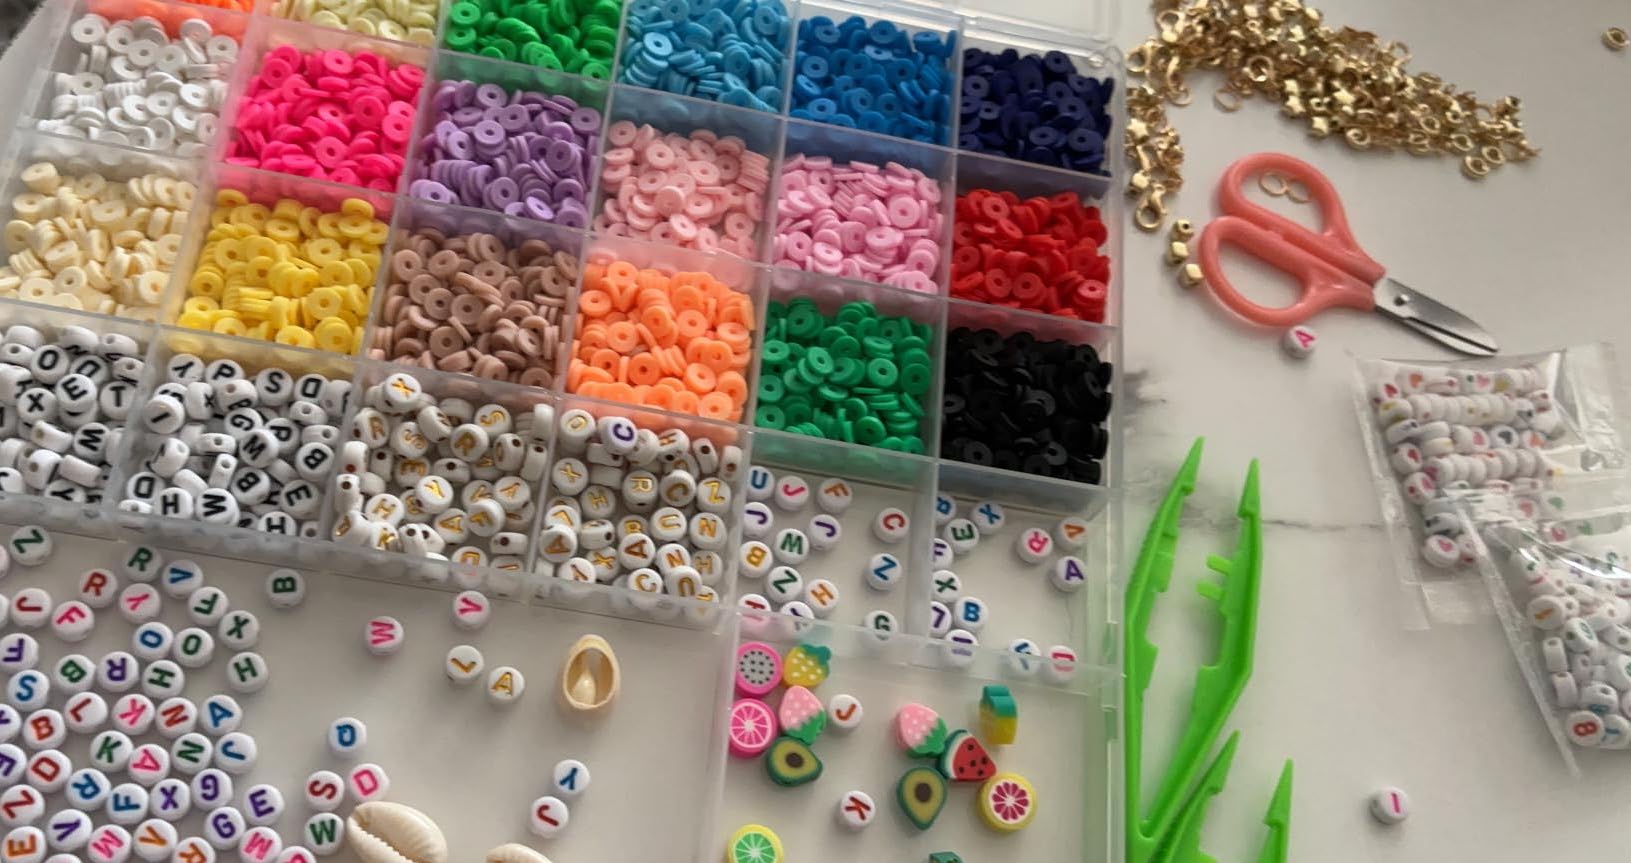 Jewelry Making Bead Kits from $4.49 on Amazon (Screen-Free Summer Fun!)